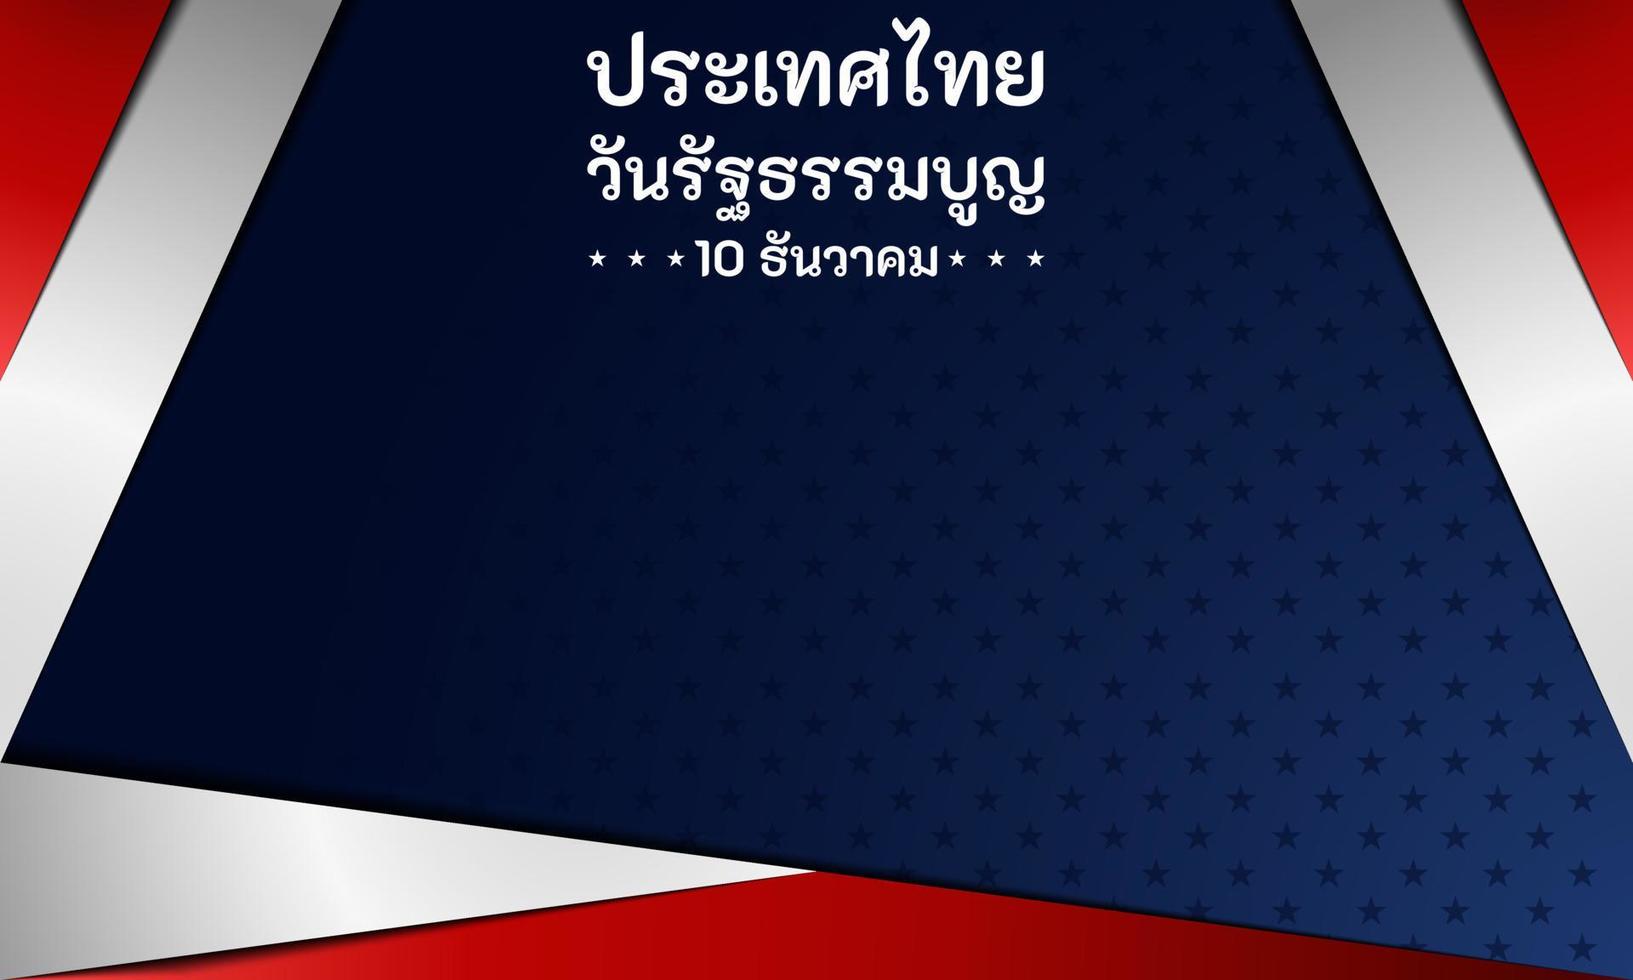 Thailand grondwet dag achtergrond. 10 dec. kopieer ruimte gebied. wenskaart, banner, vectorillustratie. met de nationale vlag van thailand en thaise alfabettekst. premium en luxe design vector